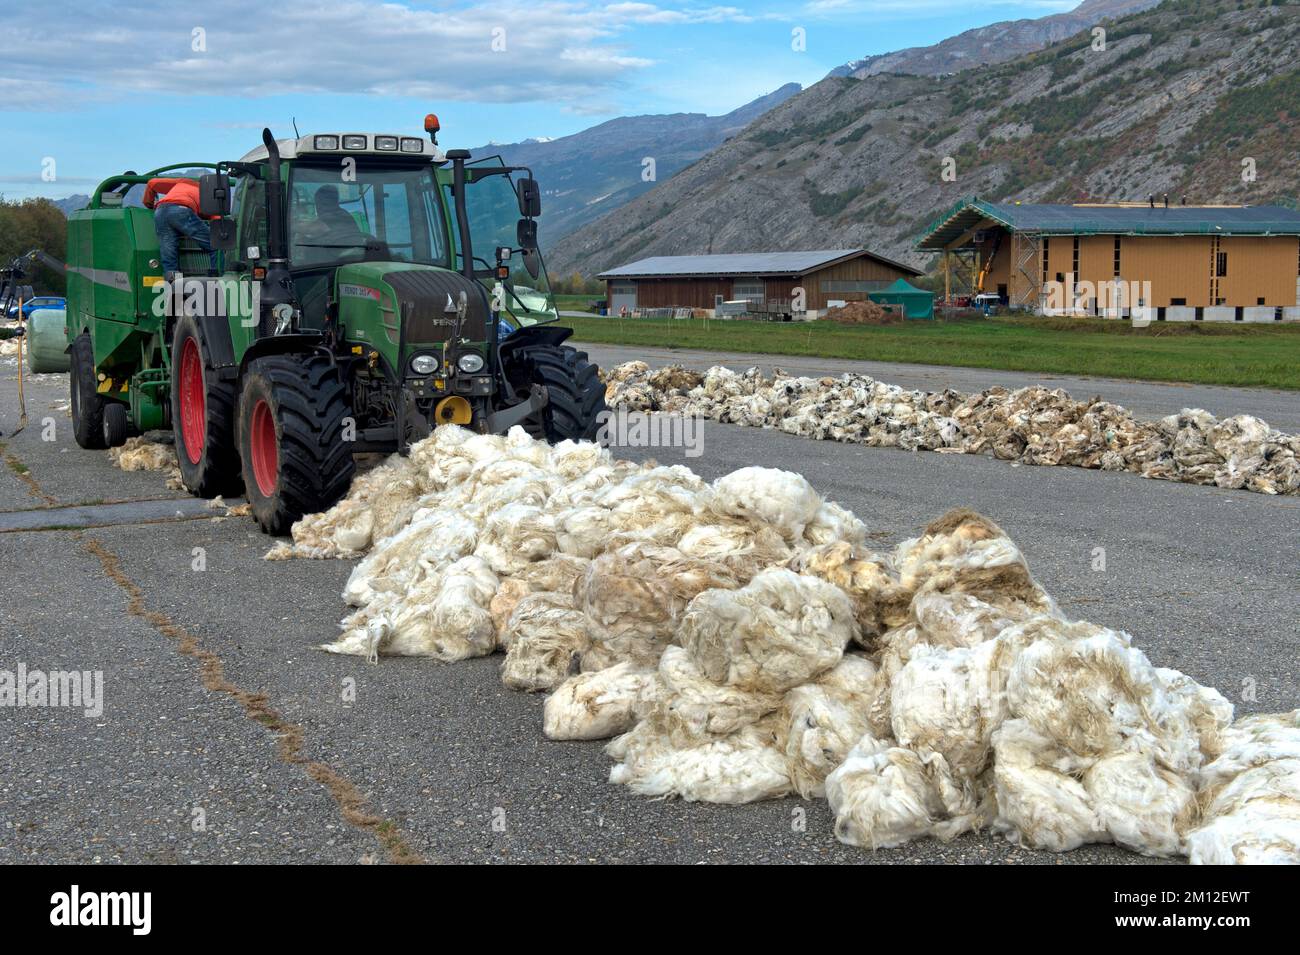 Traktor mit Rundballenpresse sammelt Schafwolle, Abnahmestelle für Frischwolle von Walais Schwarznasenschafen auf dem Turtmann-Flugplatz, Turtmann, Valais, Schweiz. Stockfoto